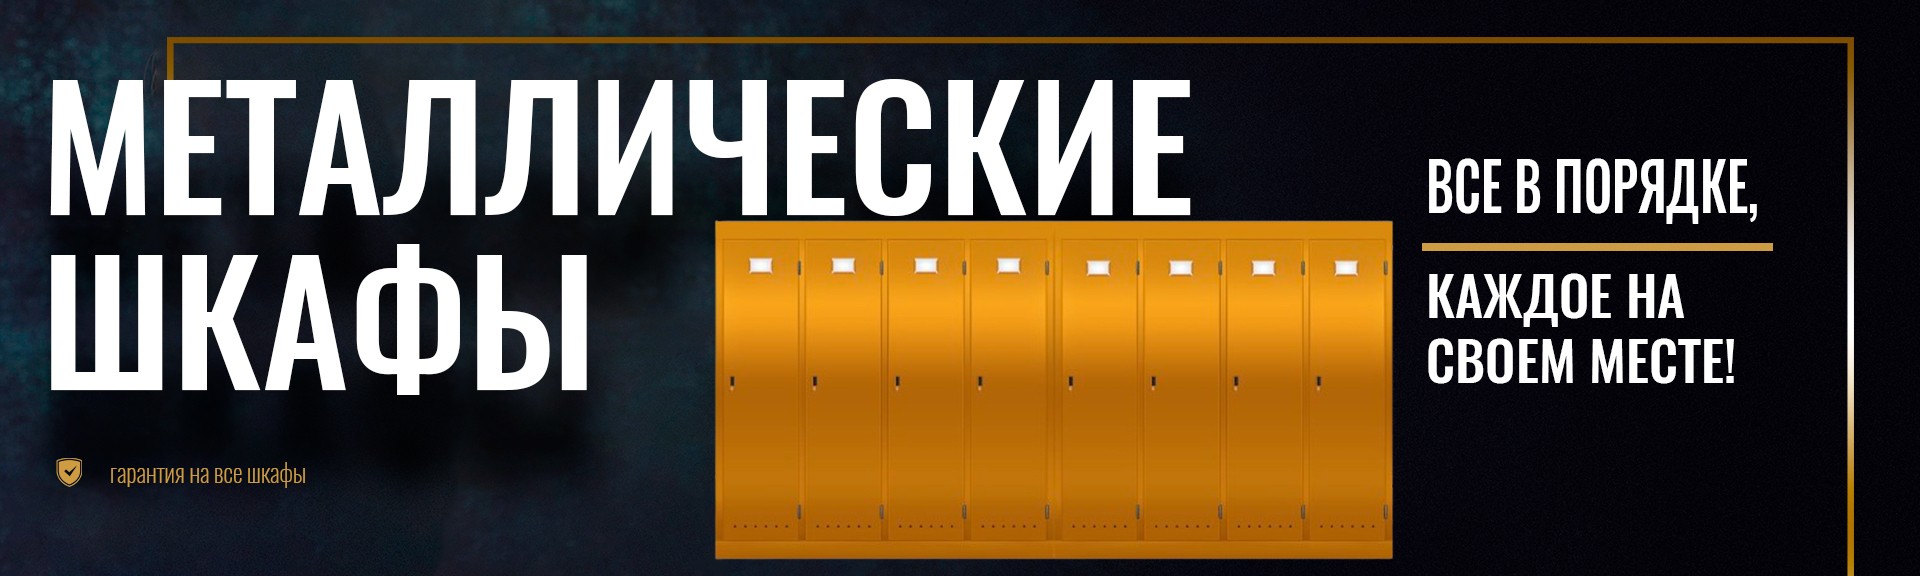 Металлические шкафы на выгодных условиях в Украине от 2100 грн.